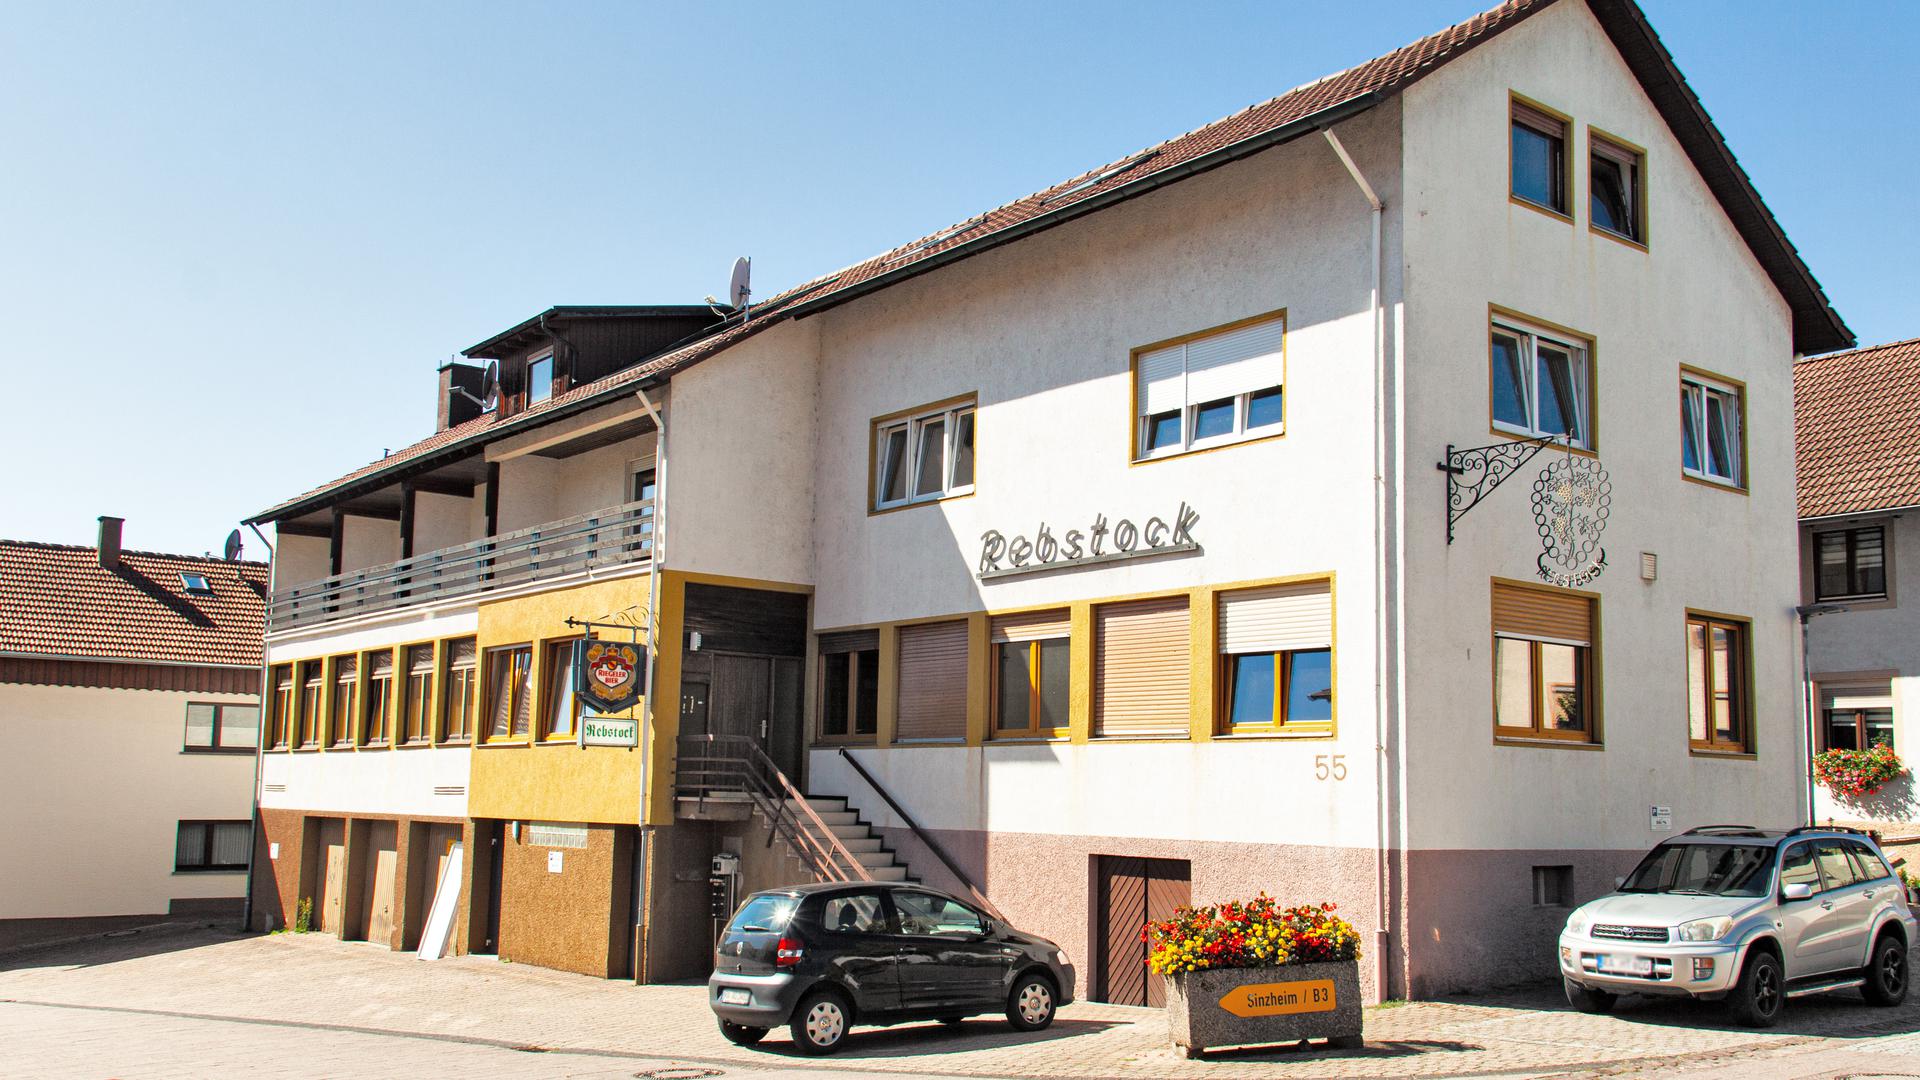 Im ehemaligen Gasthaus Rebstock in Winden will die Gemeinde Sinzheim künftig Geflüchtete unterbringen. Kapazität wäre hier für 40 bis 50 Personen. Foto: Michael Brück 